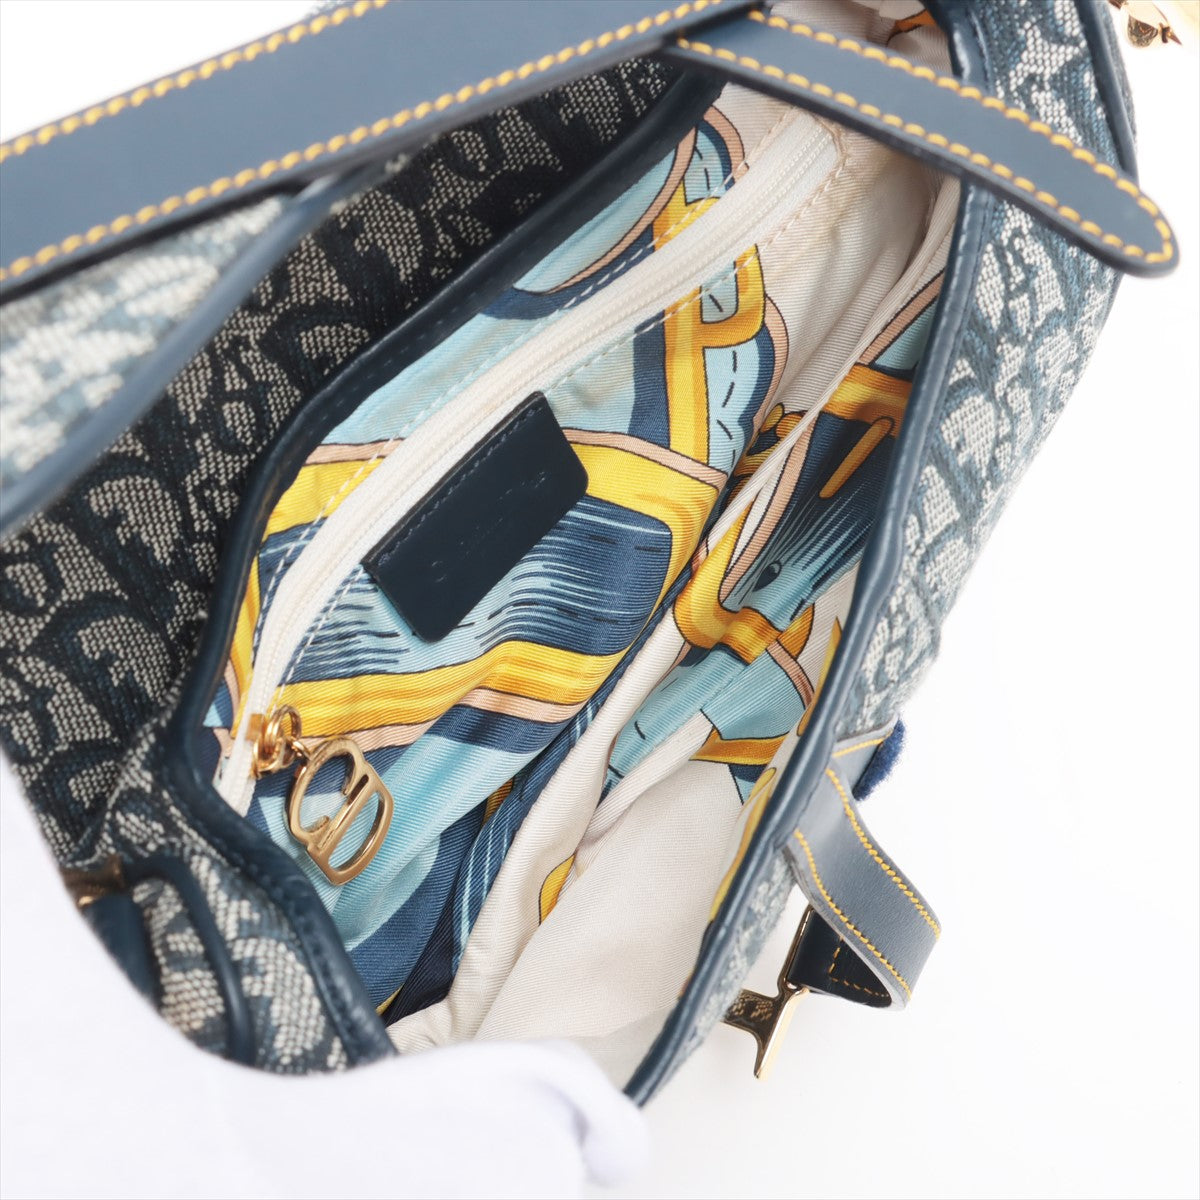 Christian Dior Trotter Saddle Bag canvass Shoulder bag Navy blue